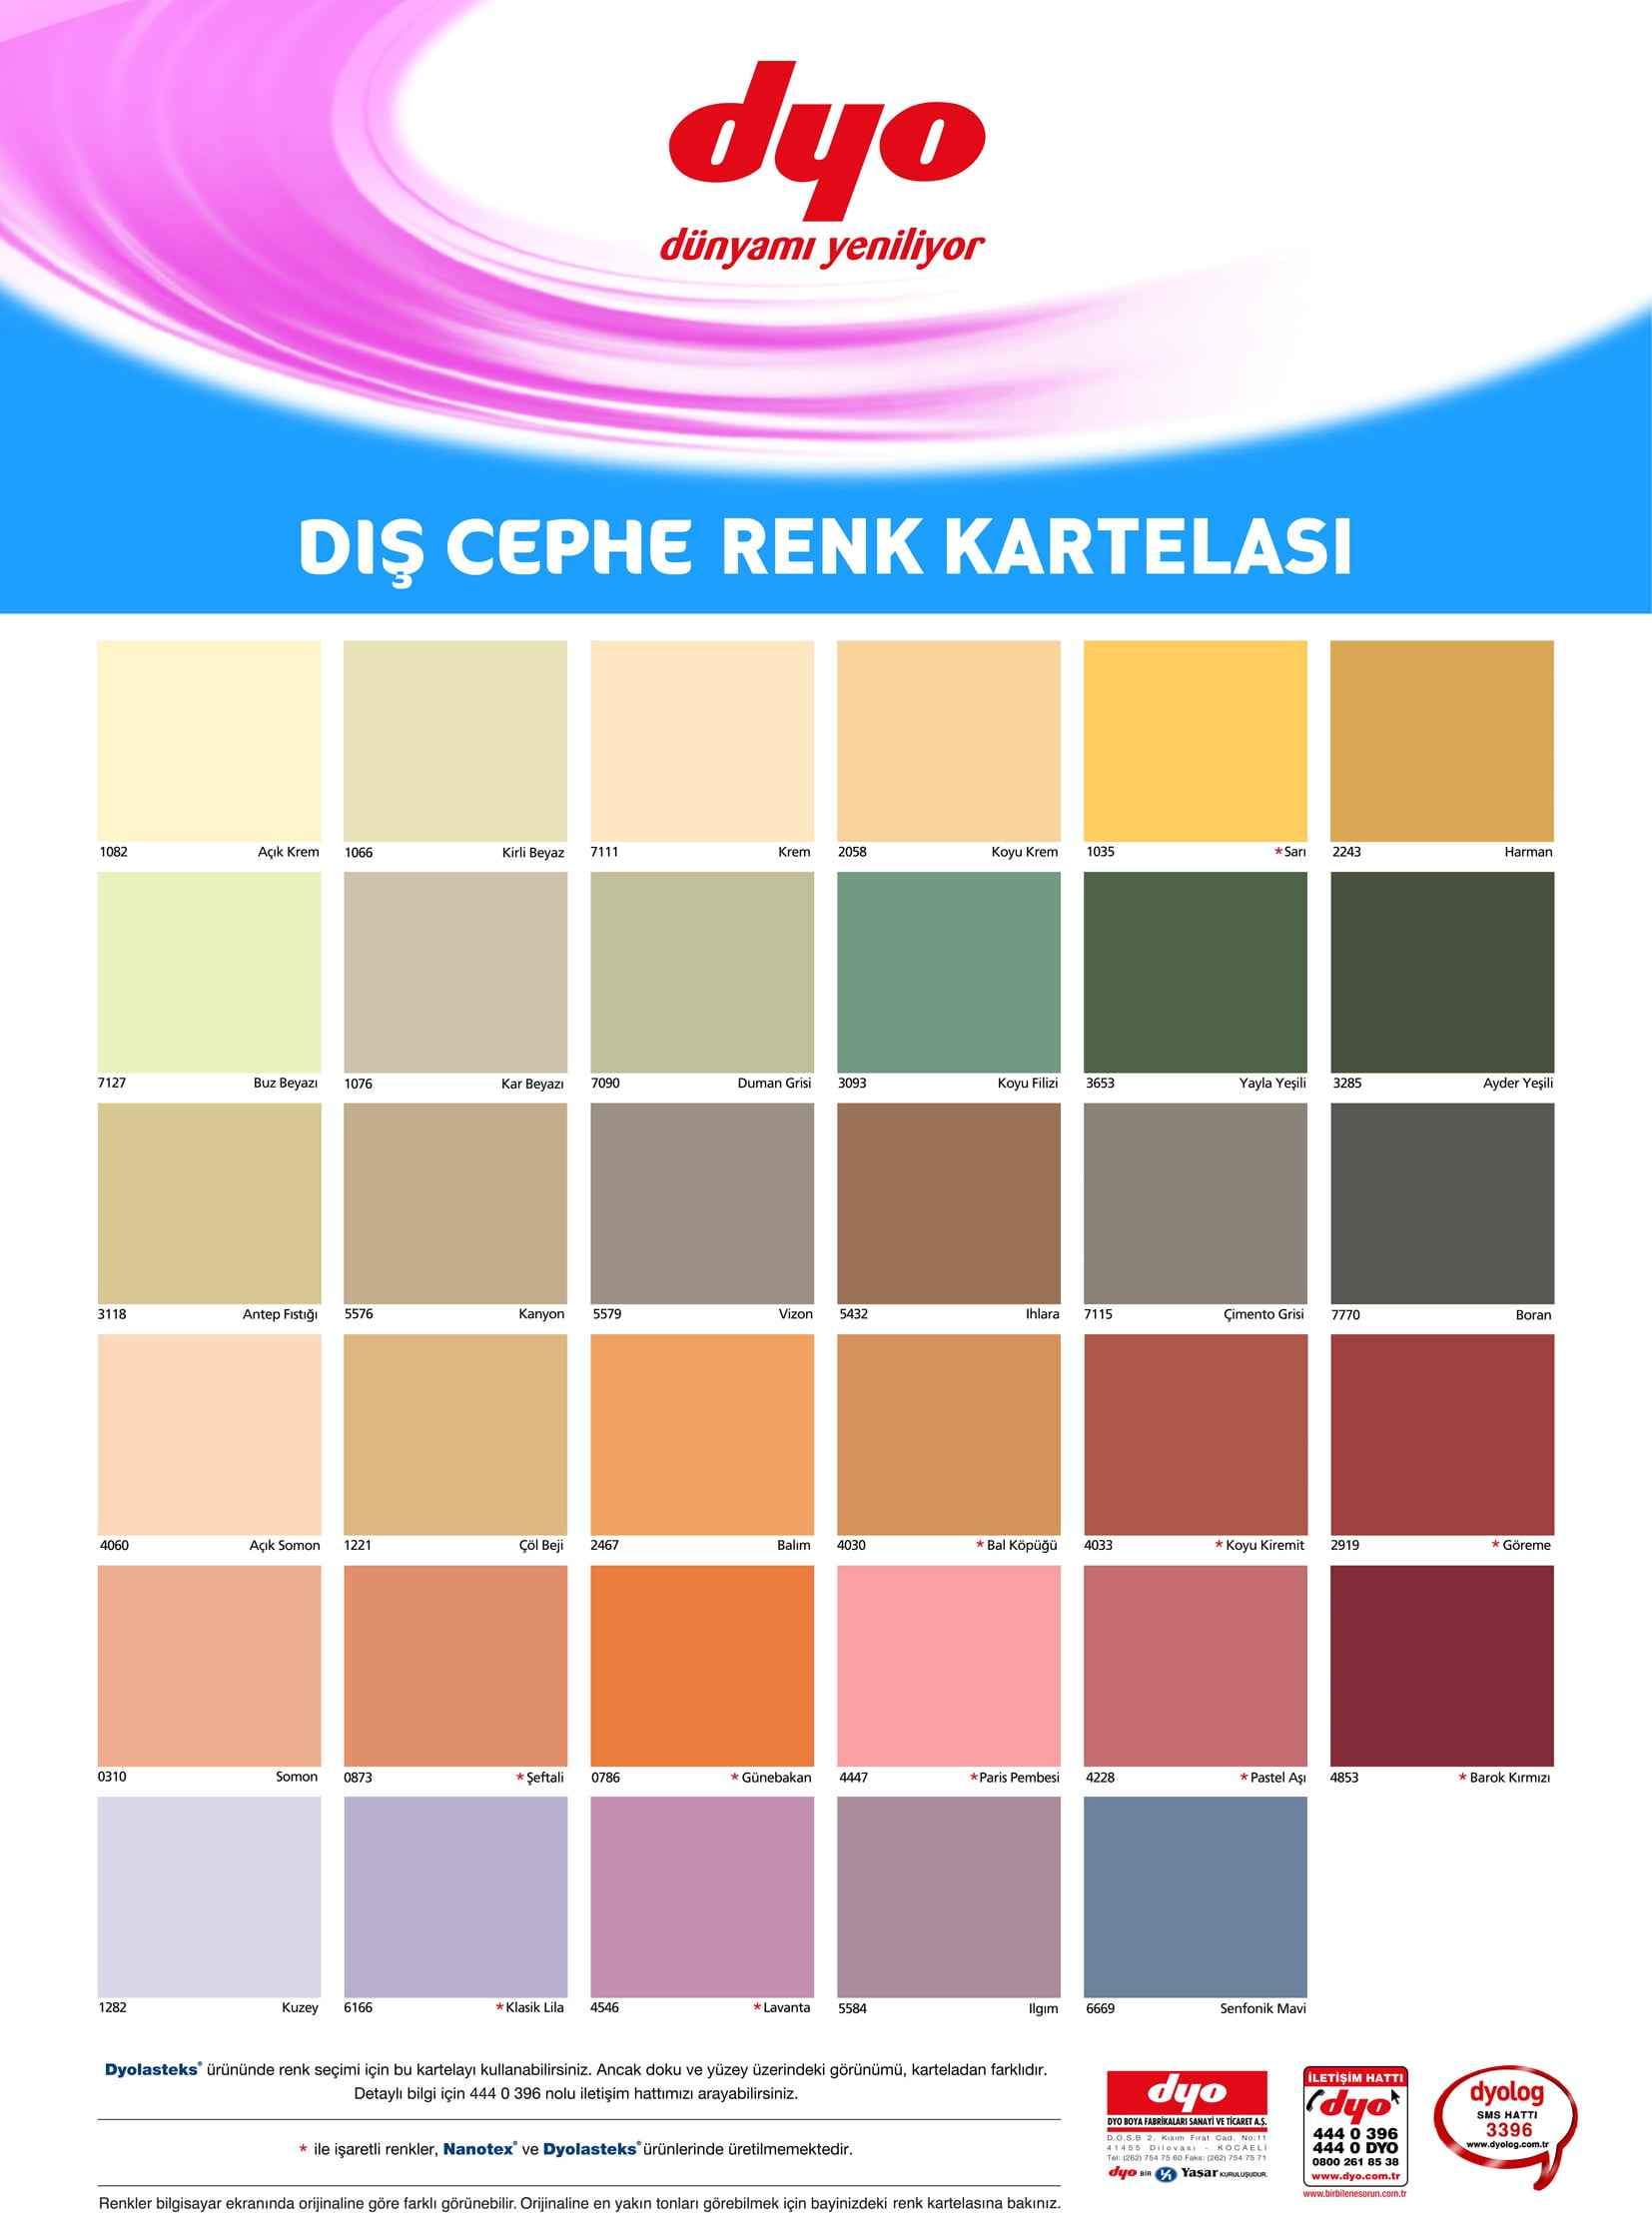 Dyo Dış Cephe Renk Kartelası (1)